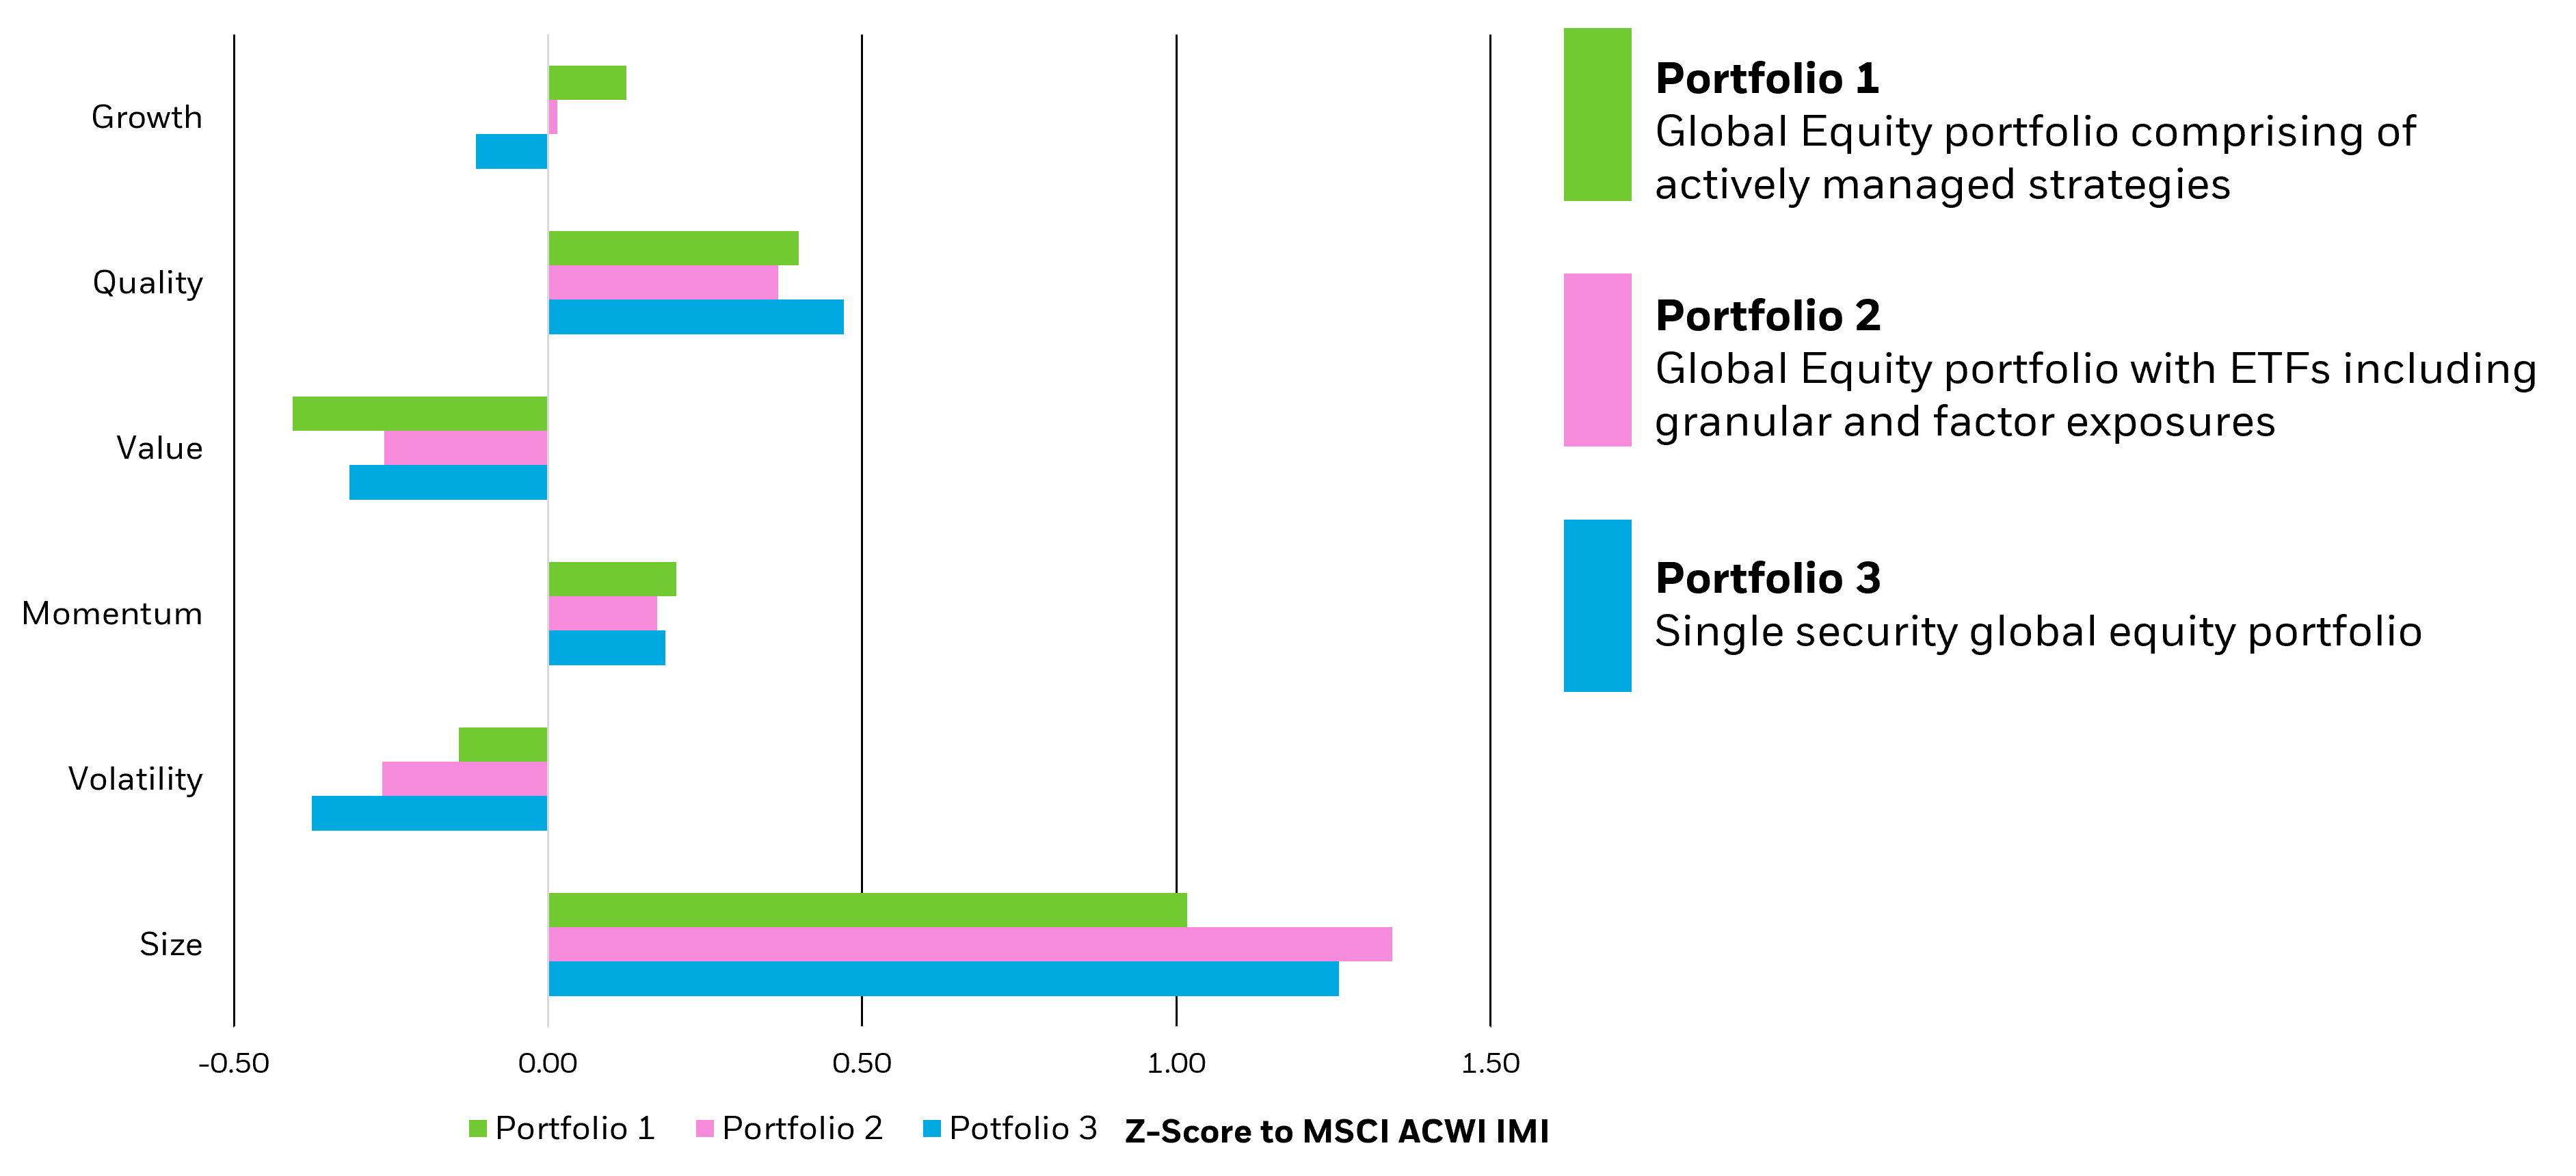 Factor exposure of example Australian portfolios graph